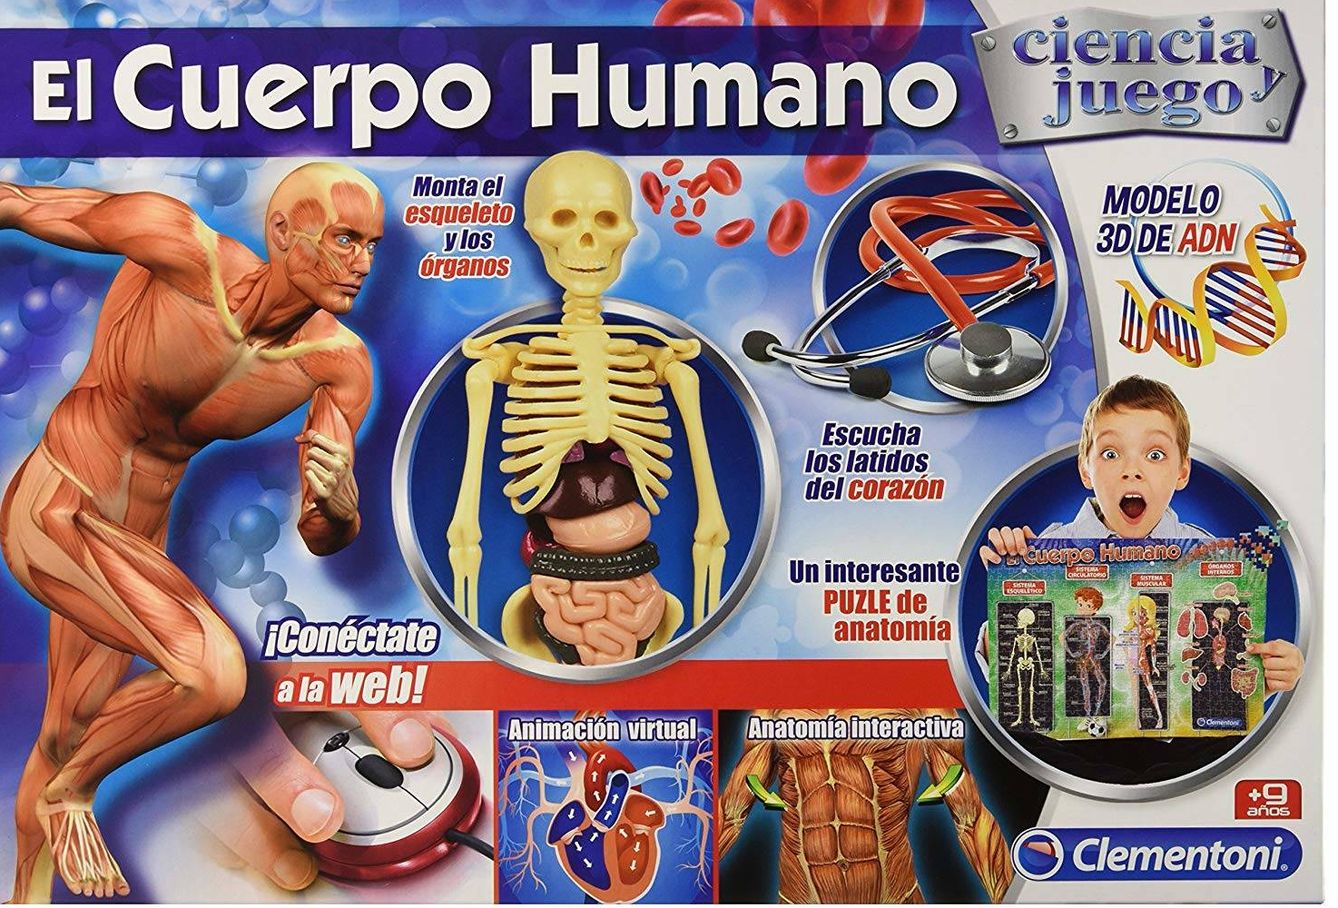 El Cuerpo Humano. (Amazon)